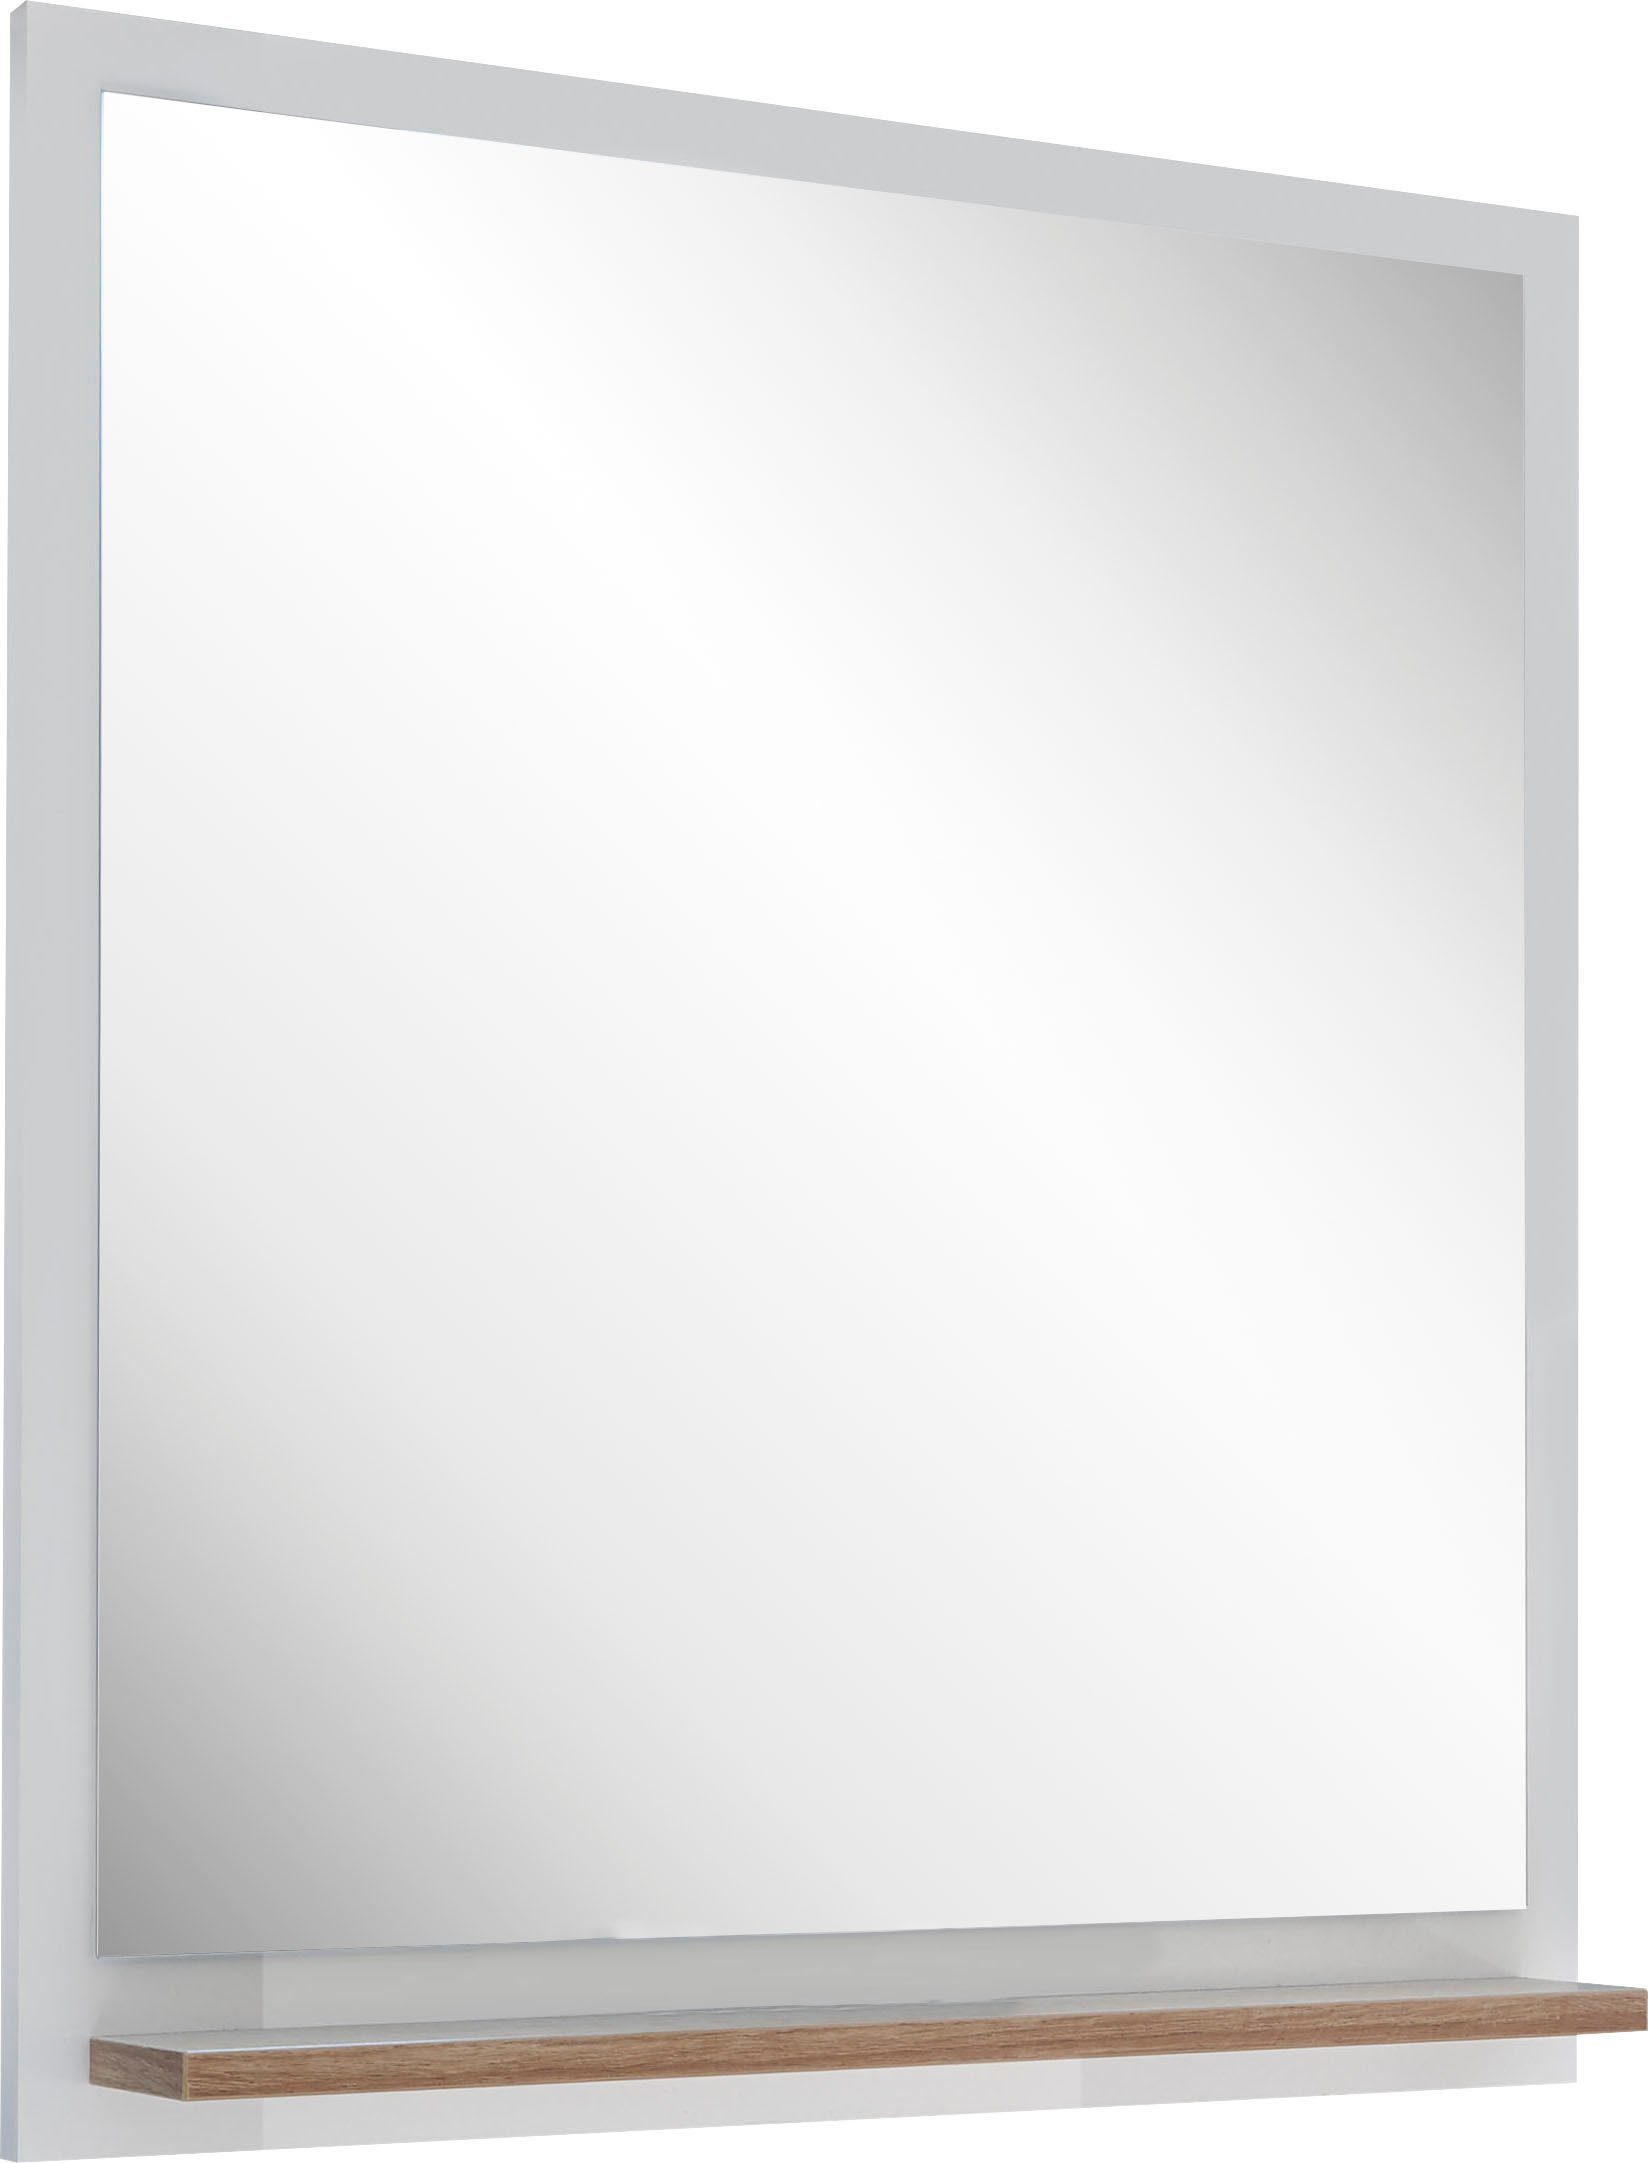 Breite 60 cm, 923, Ablagefläche PELIPAL 1 Badspiegel Quickset